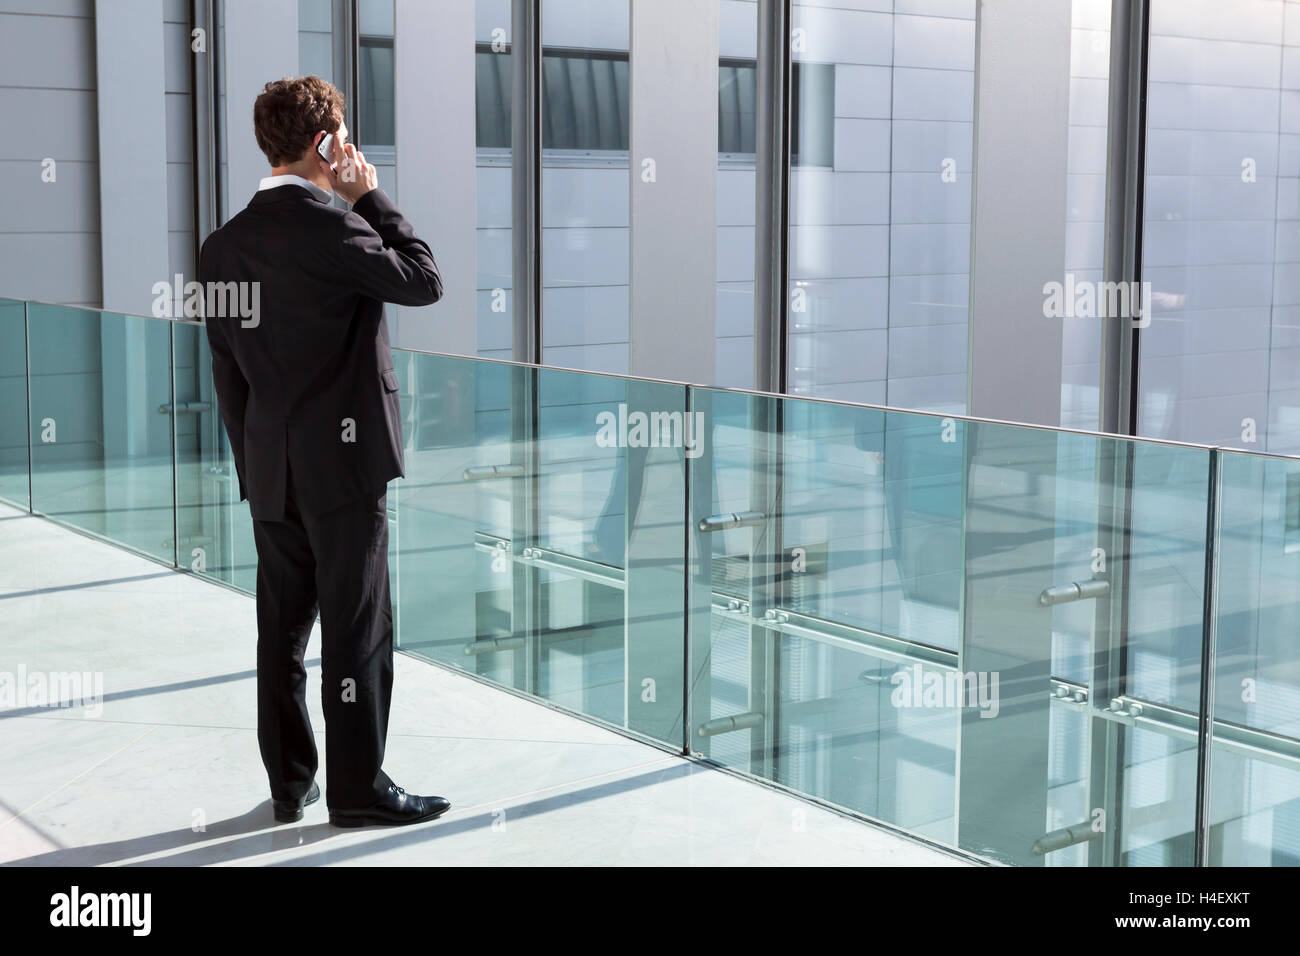 Businessman phoning avec nouvelle technologie smartphone dans immeuble de bureaux modernes Banque D'Images